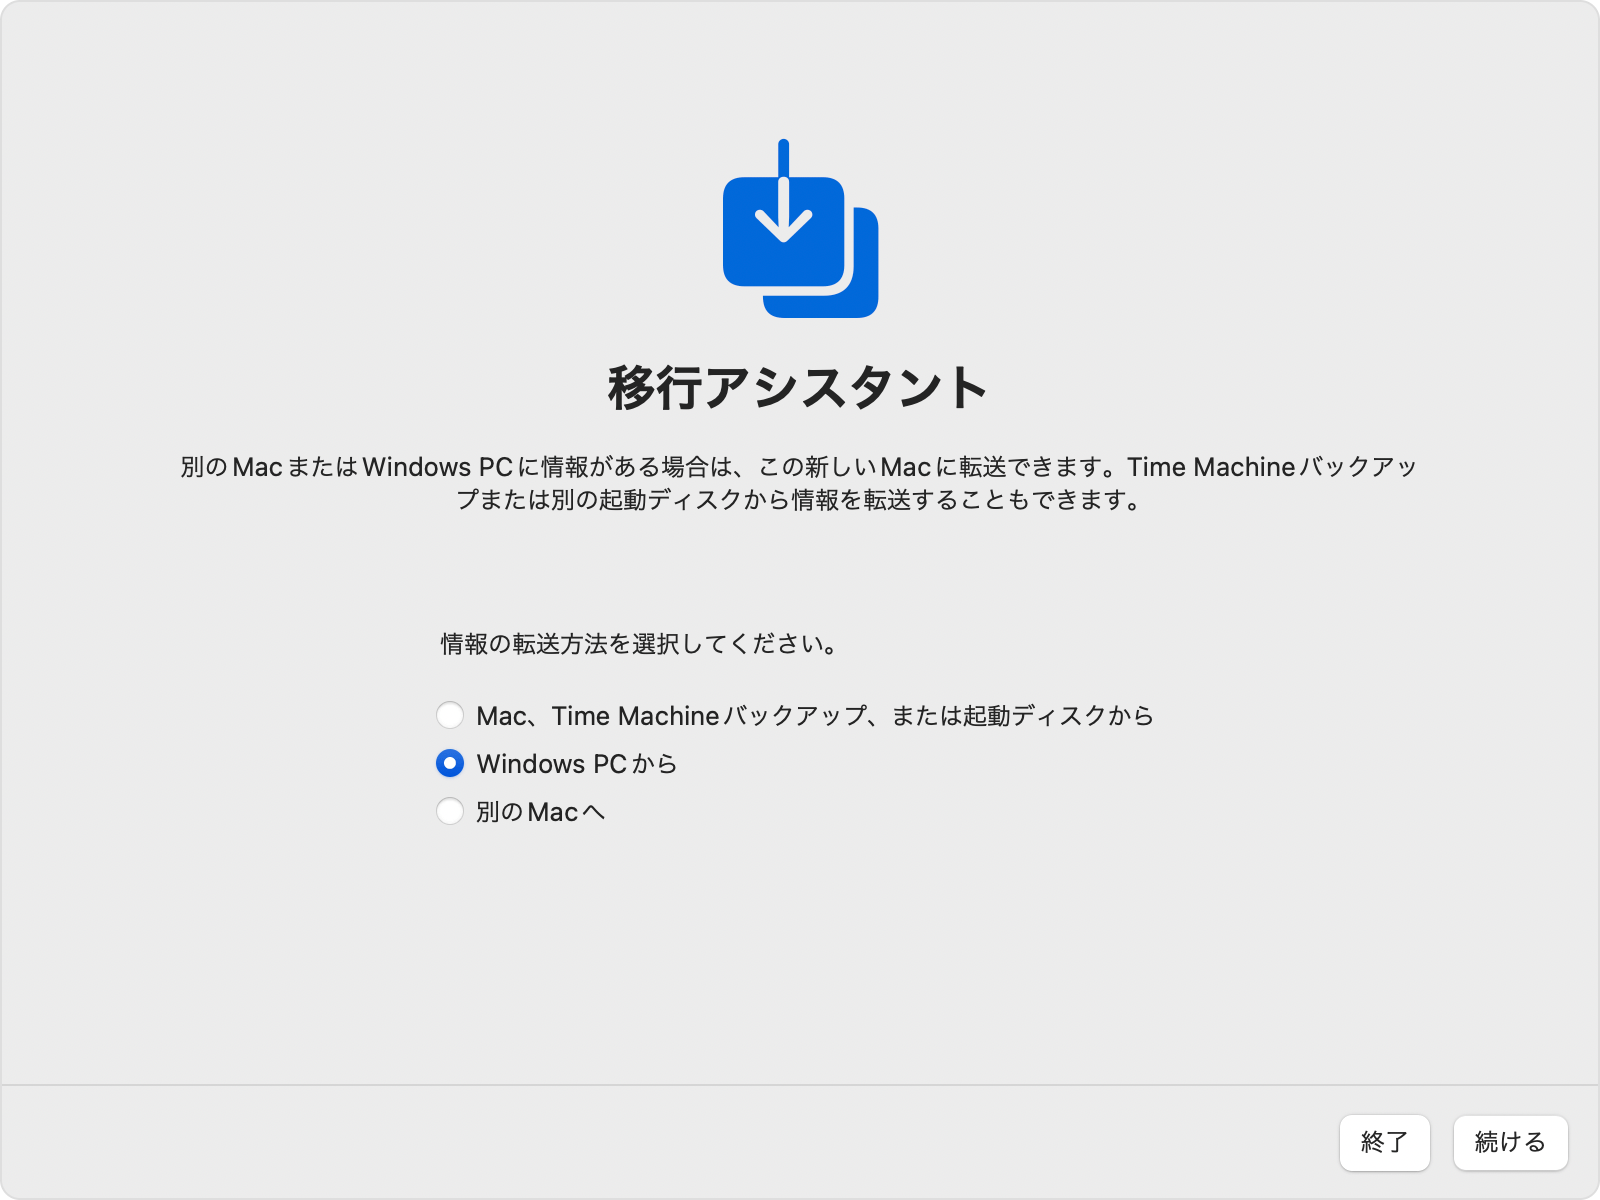 Mac の移行アシスタント：「Windows PC から」転送するよう選択されているところ